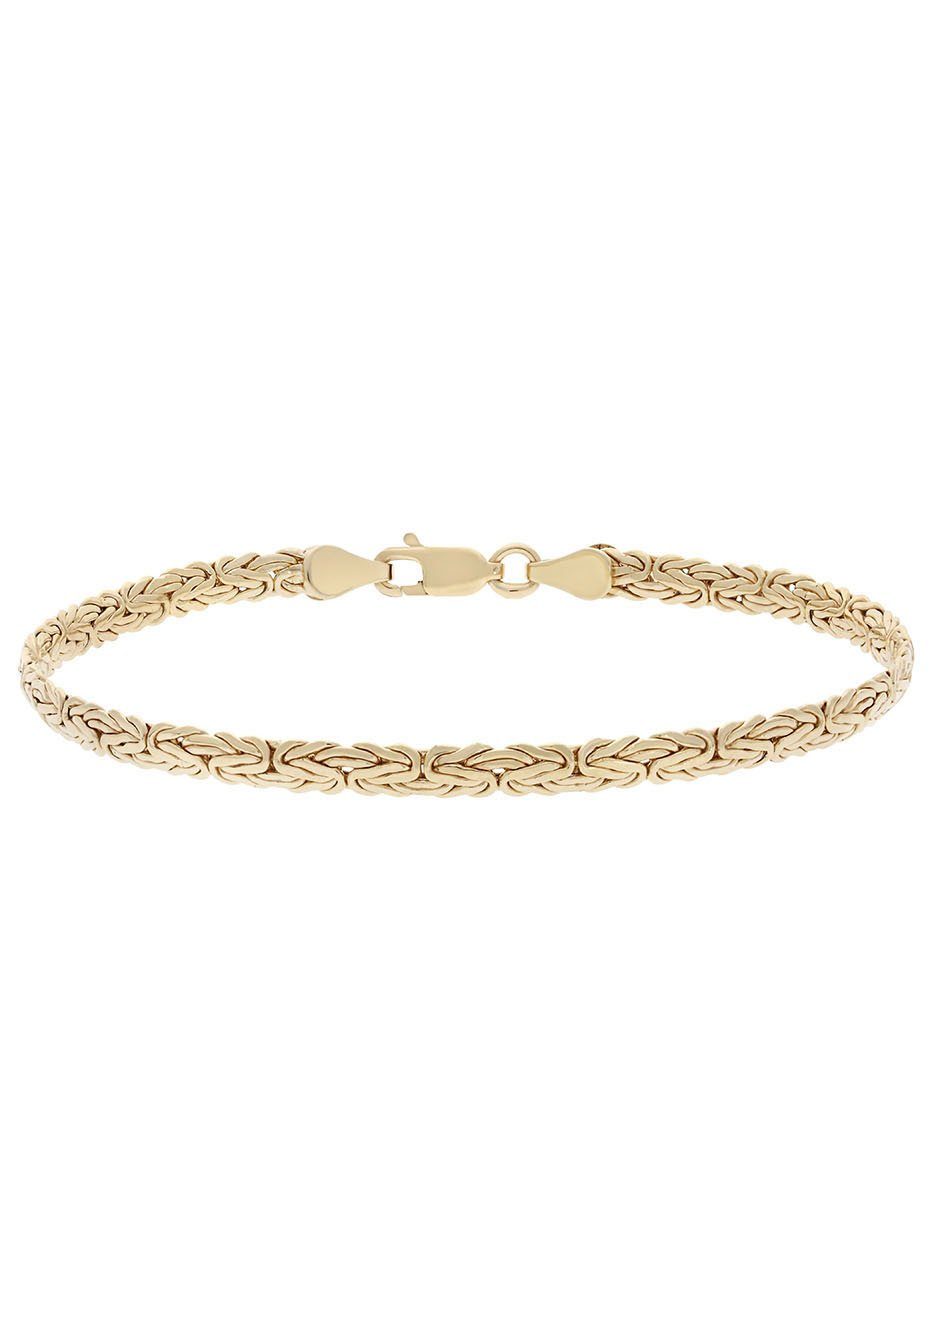 Firetti Armkette Schmuck Geschenk Gold 375 Armschmuck Armband Goldarmband Königskette, zu Kleid, Shirt, Jeans, Sneaker! Anlass Geburtstag Weihnachten